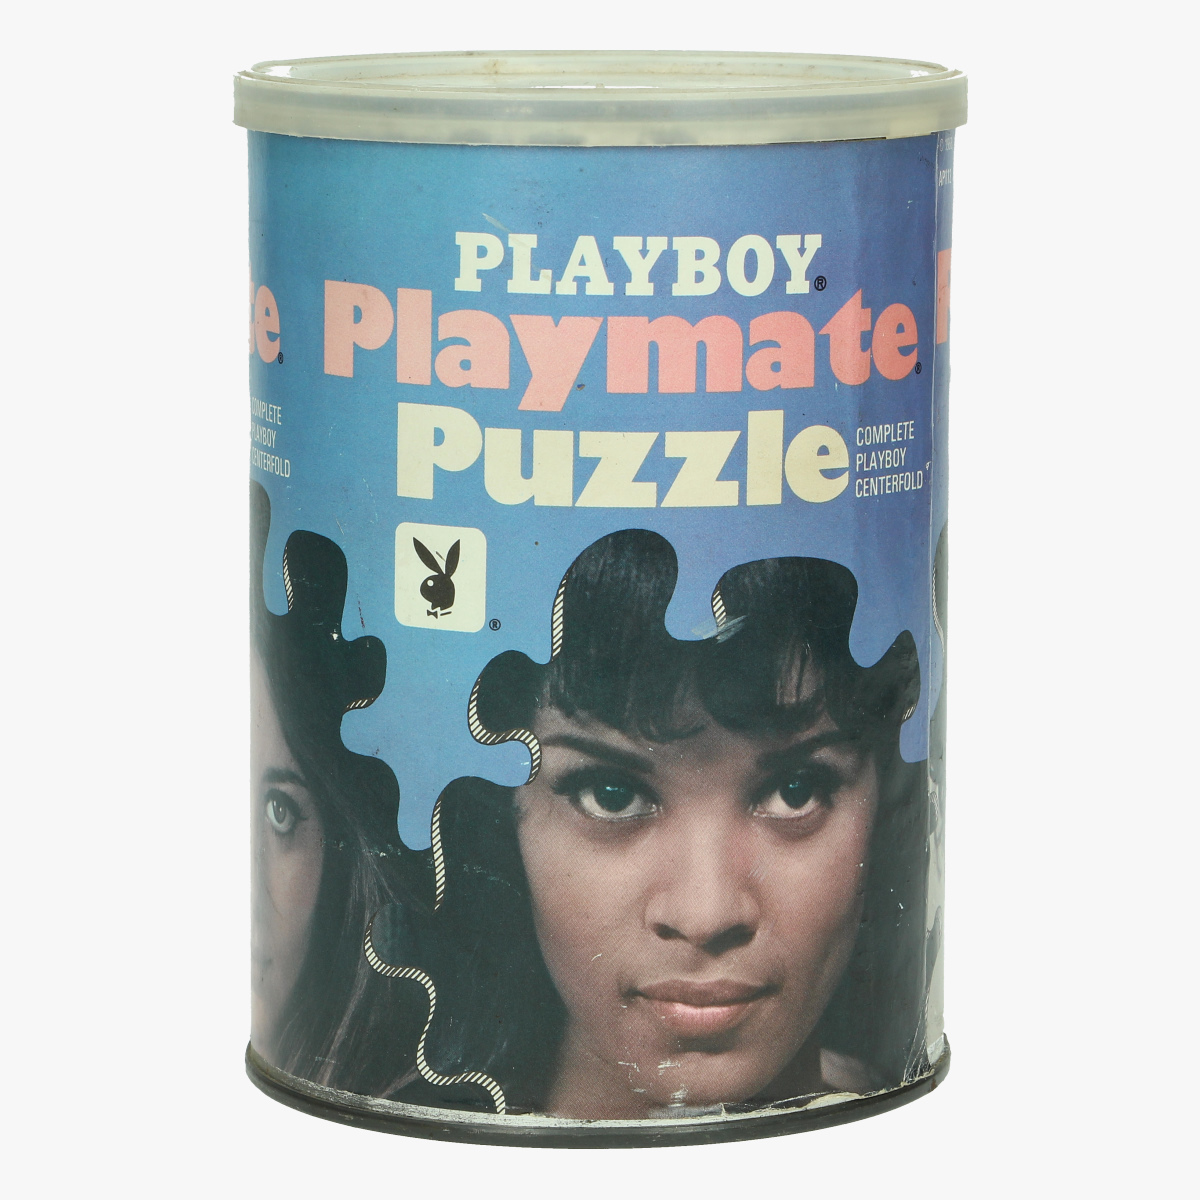 Afbeeldingen van vintage playbboy puzzel 1968 nog afgesloten blik